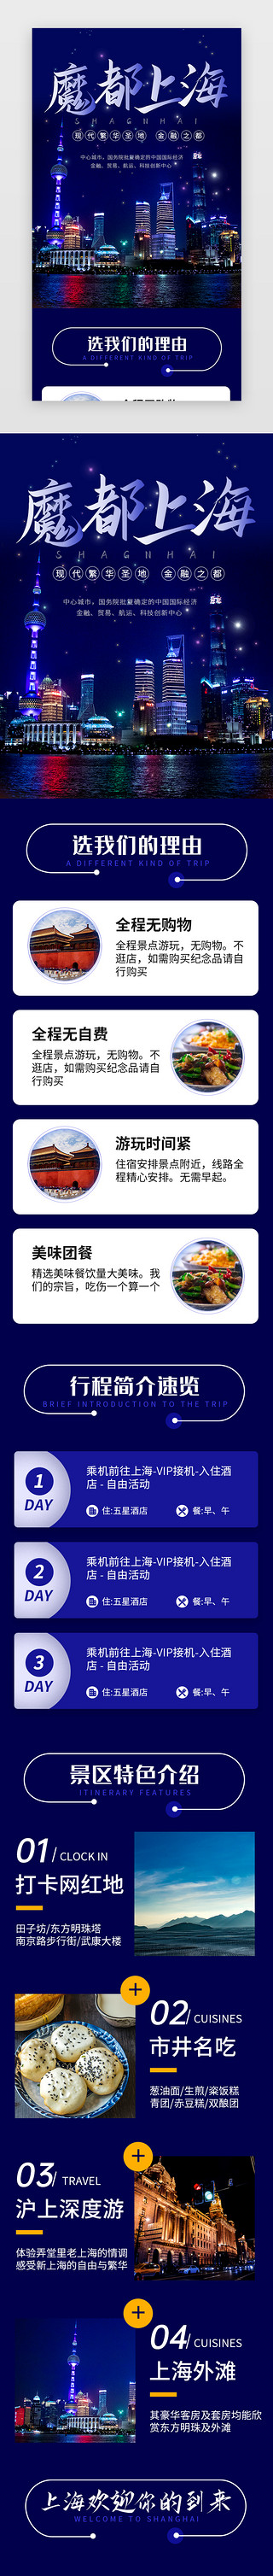 介绍旅游景点UI设计素材_蓝色魔都上海旅行景点介绍H5长图海报